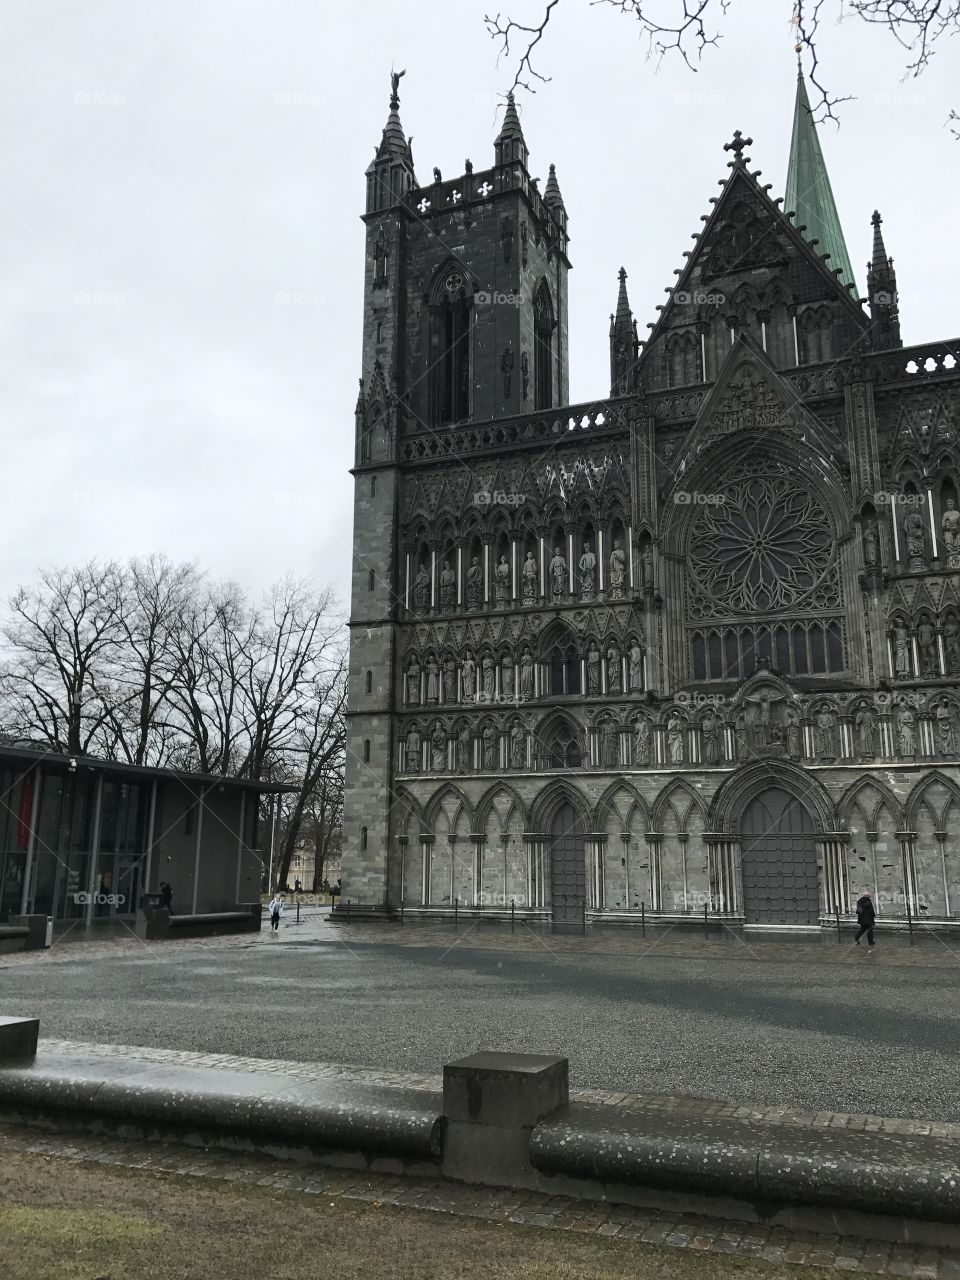 Nidaros Cathedral, Trondheim, Norway